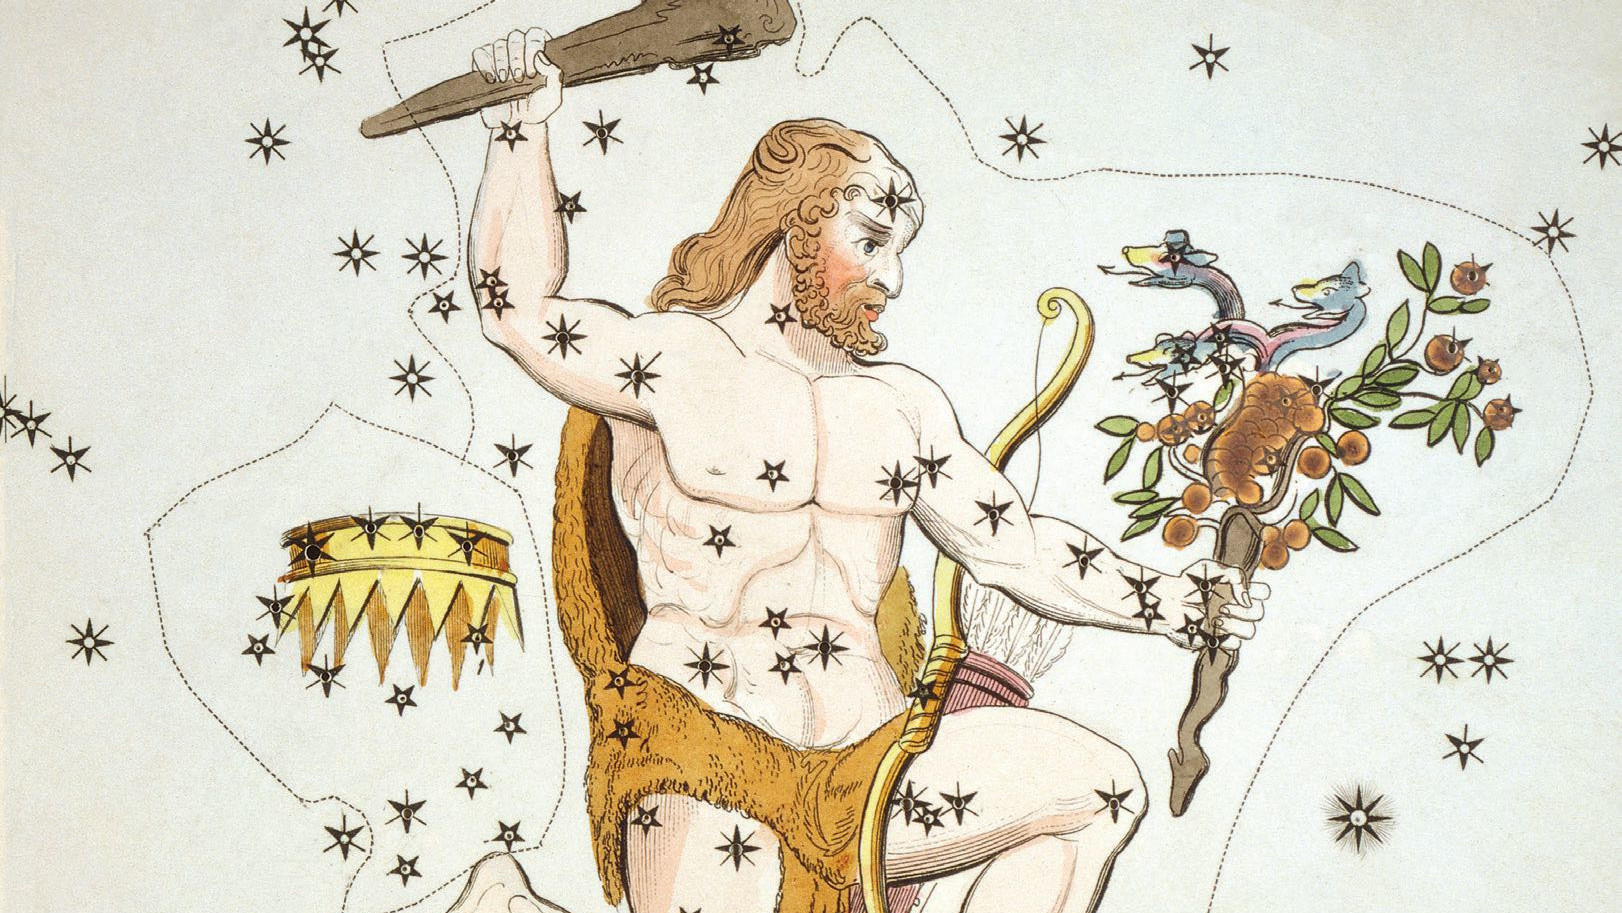 På historiska illustrationer avbildas Herkules komplett med en klubba i handen, lejonskinnet och de stulna gyllene äpplena. 
